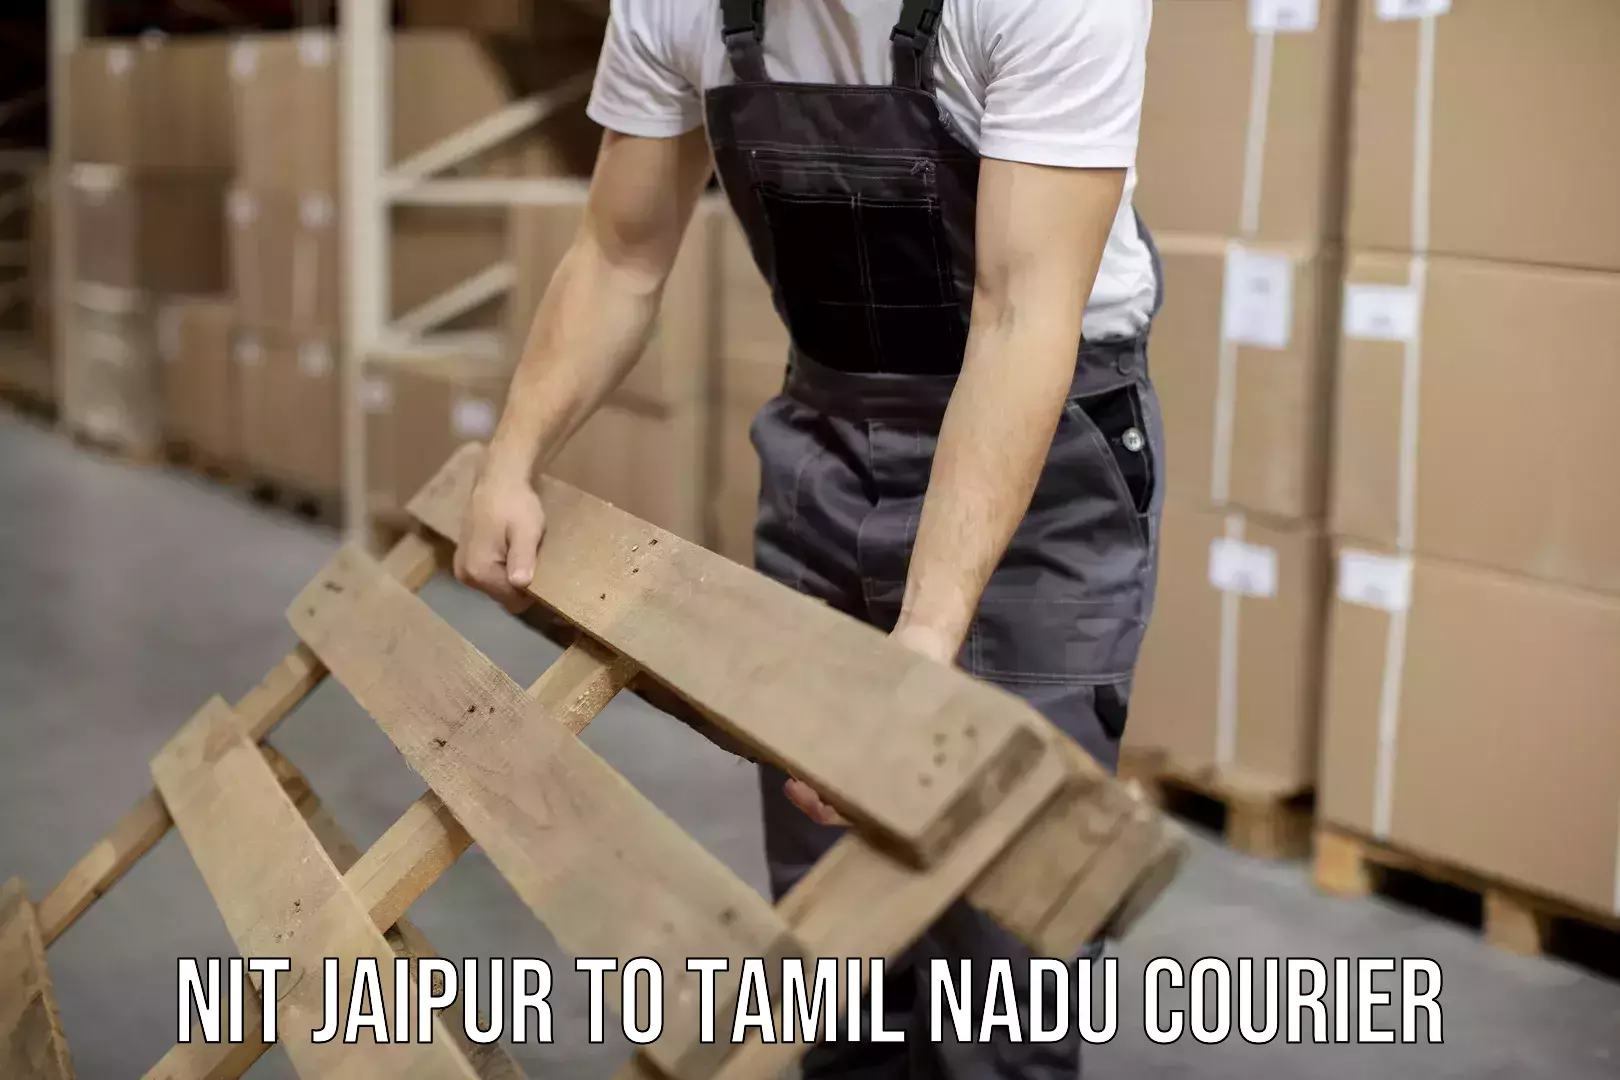 Custom courier rates NIT Jaipur to Tamil Nadu